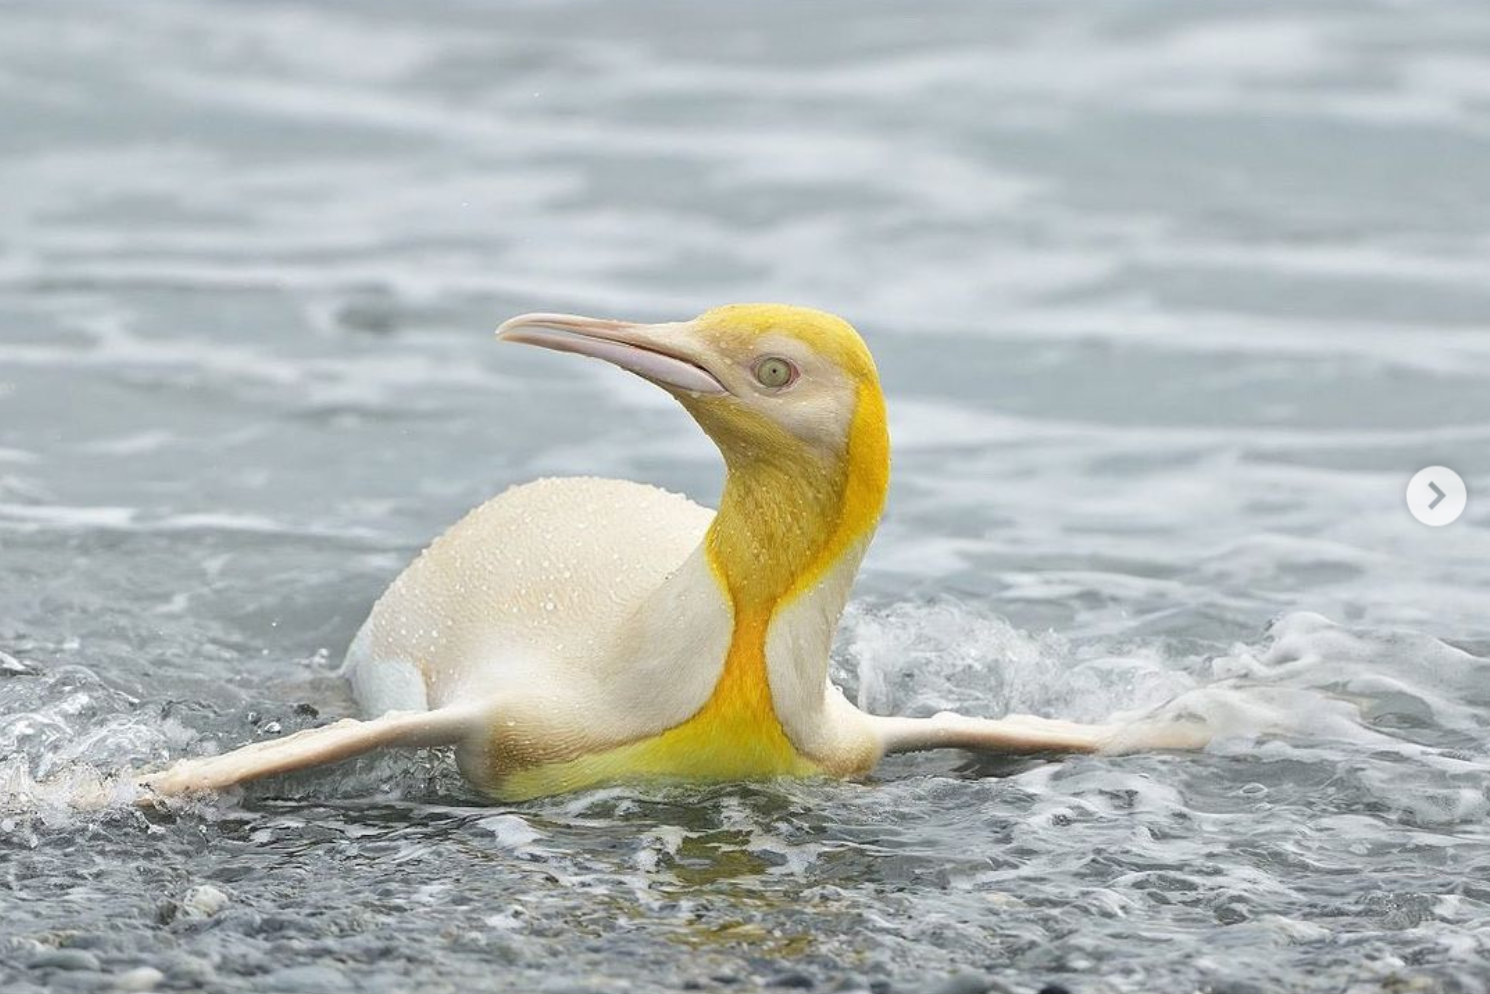 Сенсация. Впервые в мире в объектив попал желтый пингвин (ФОТО) 1